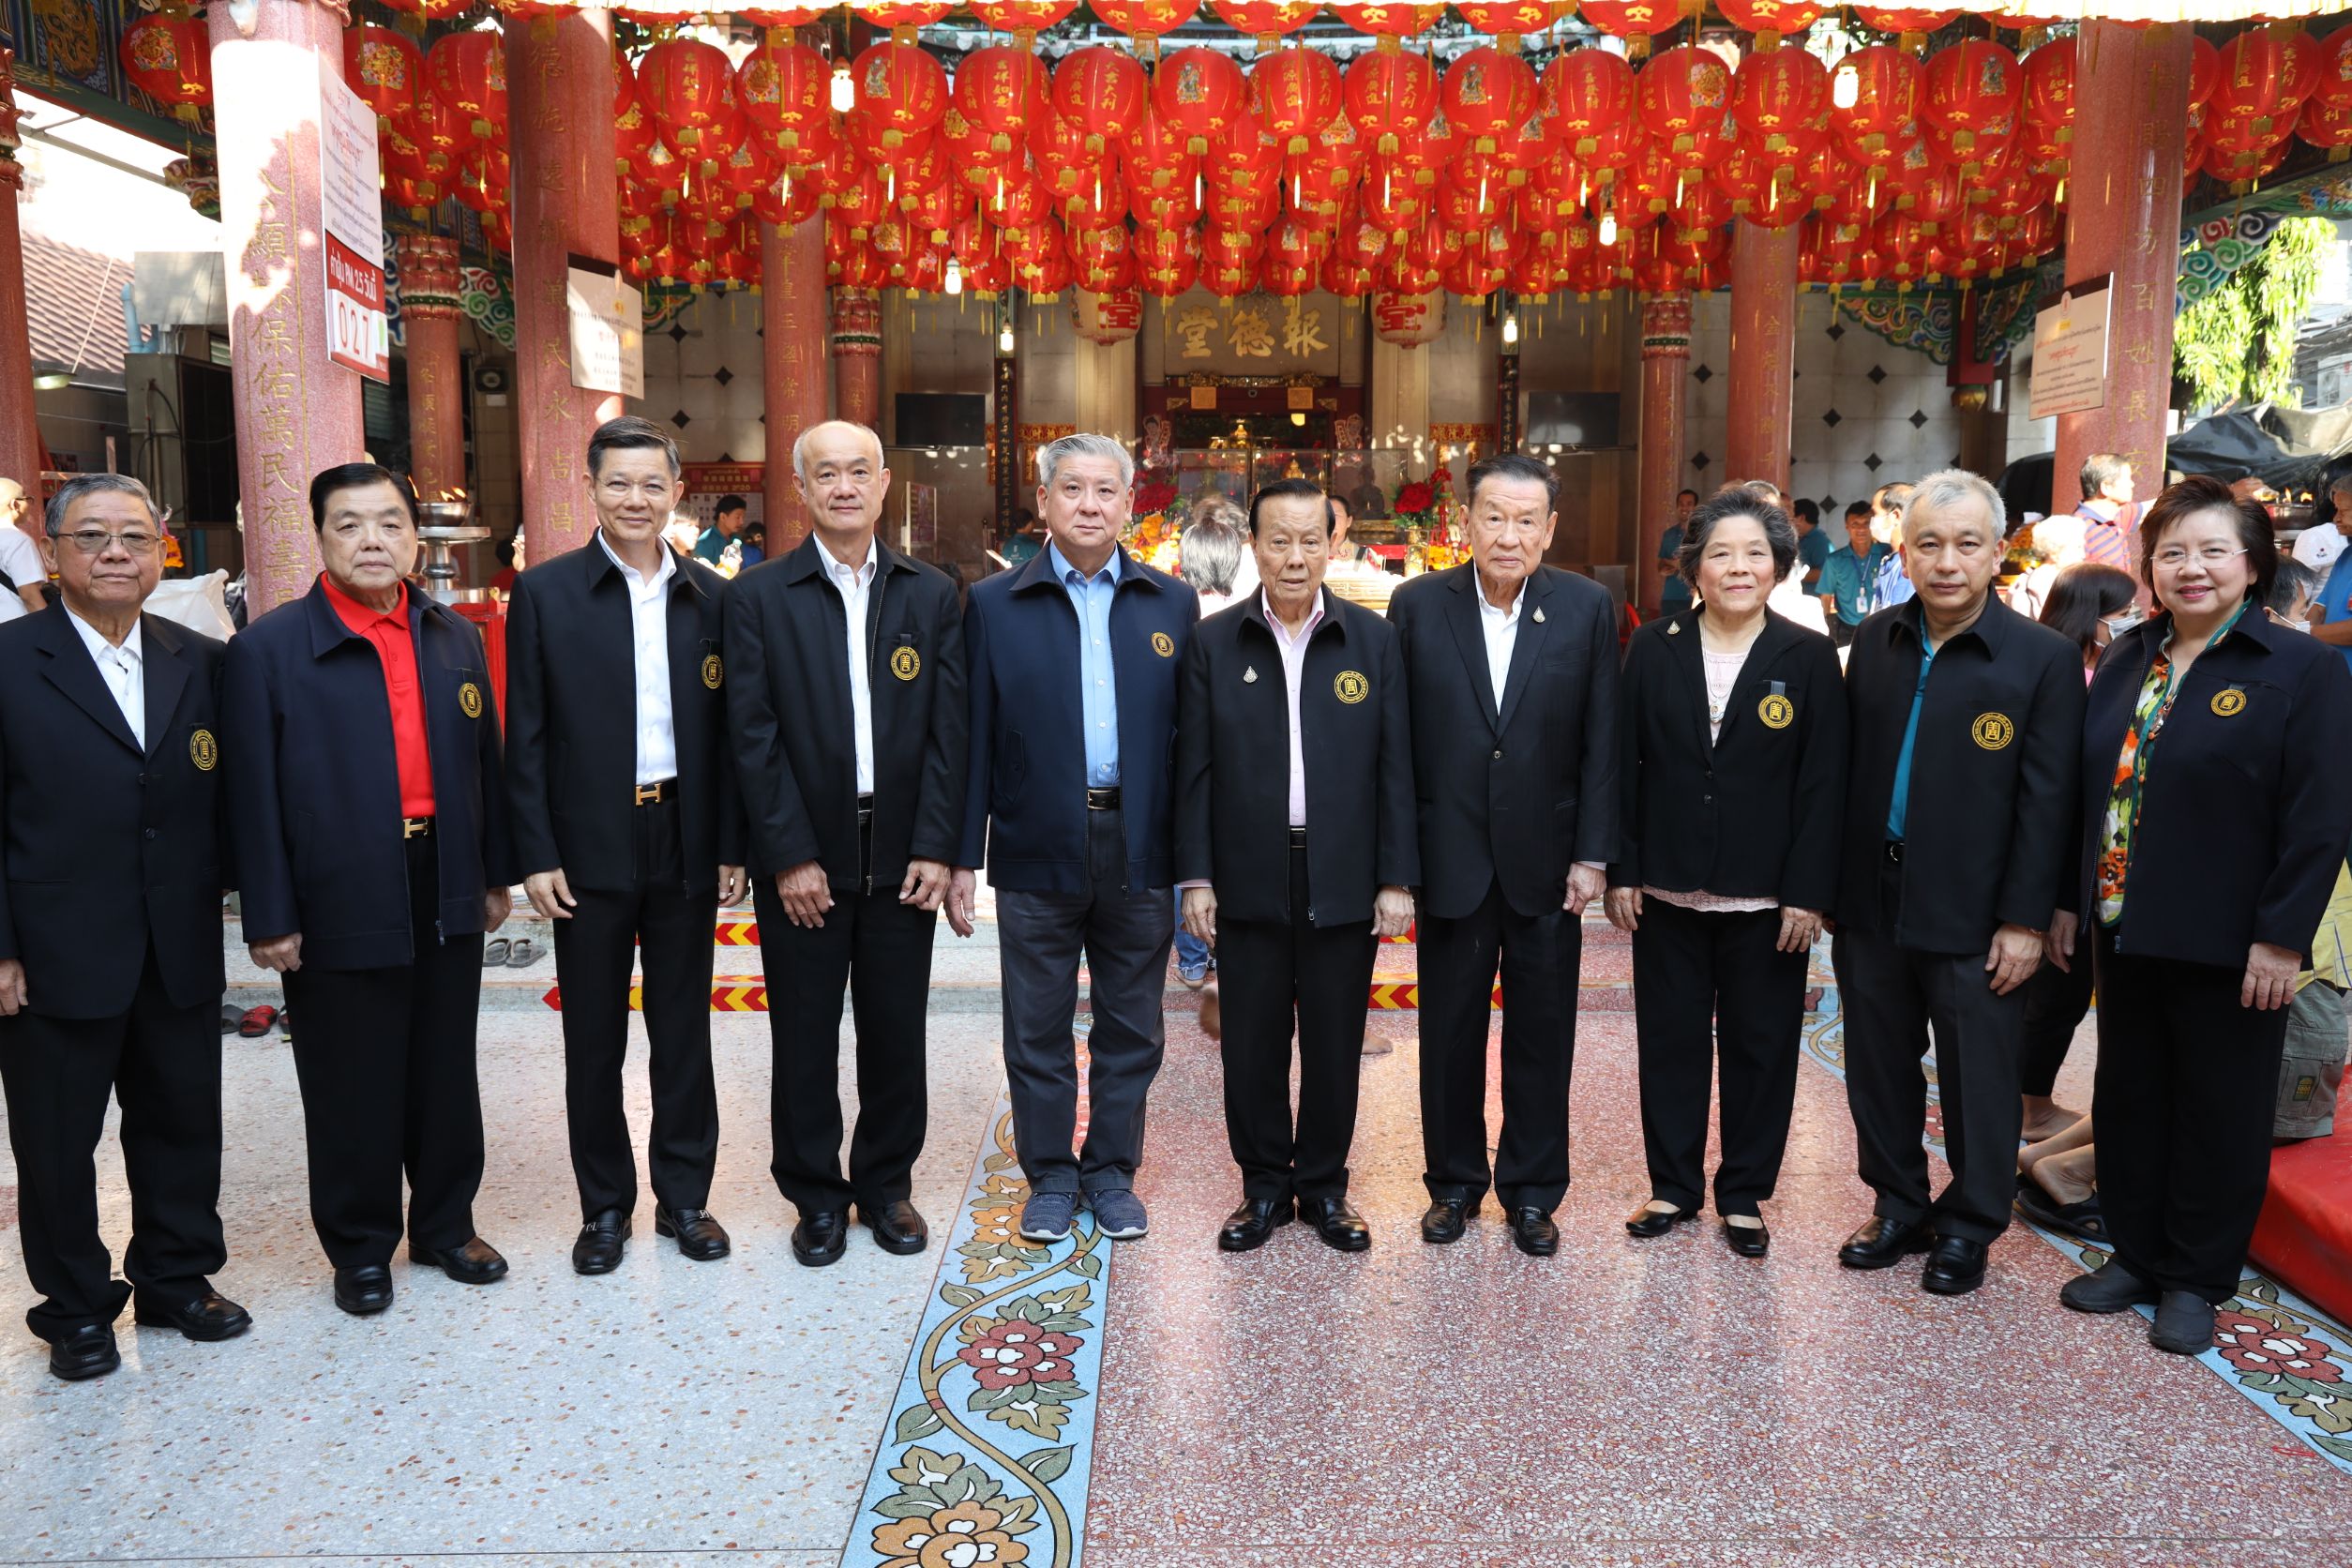 มูลนิธิป่อเต็กตึ๊ง จัดพิธีจุดเทียนเปิดงานเทศกาลตรุษจีน (ชิวสี่)  เริ่มพิธีสวดชัยมงคลคาถา (พะเก่ง) ณ ศาลเจ้าไต้ฮงกง พลับพลาไชย กรุงเทพฯ